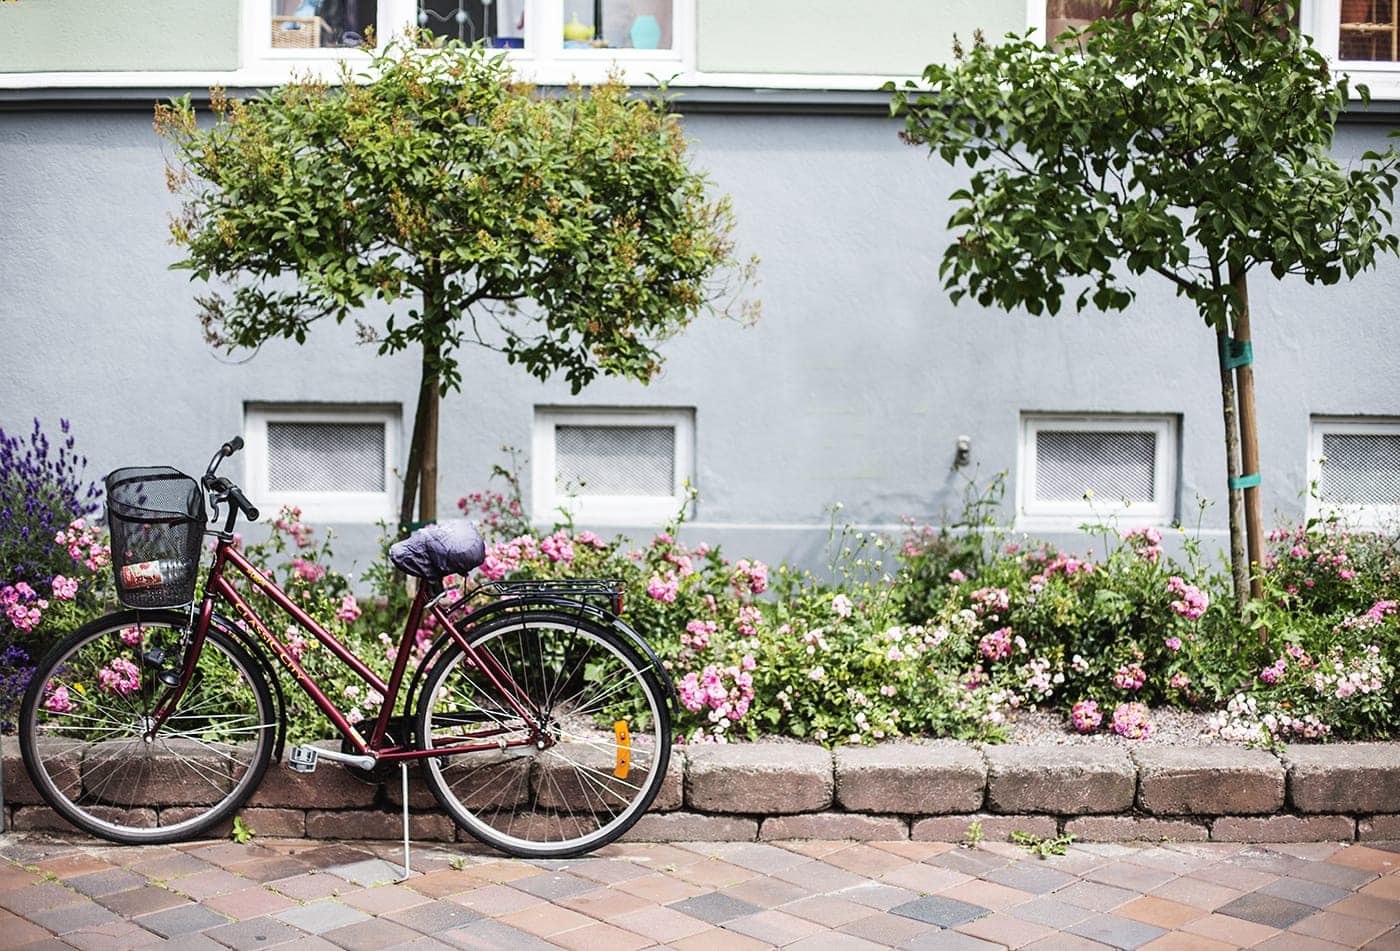 copenhagen-wanderlust-bicycles-and-flowers